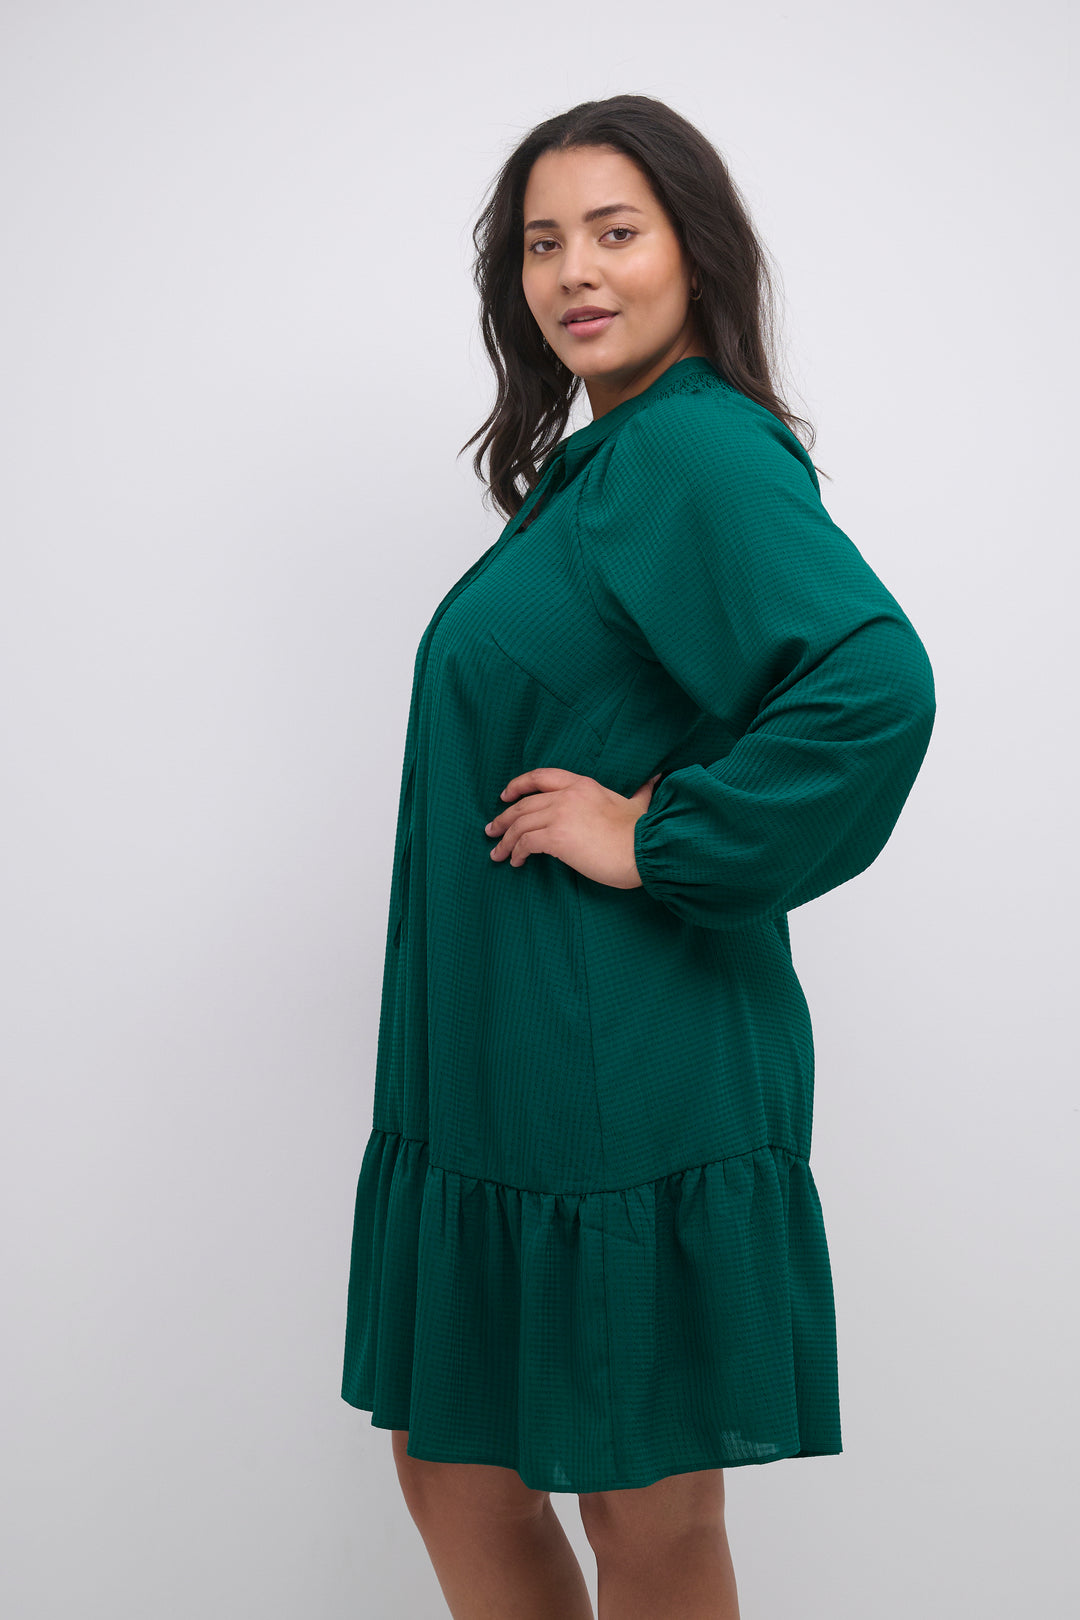 groene jurk - kaffe curve - - grote maten - dameskleding - kledingwinkel - herent - leuven